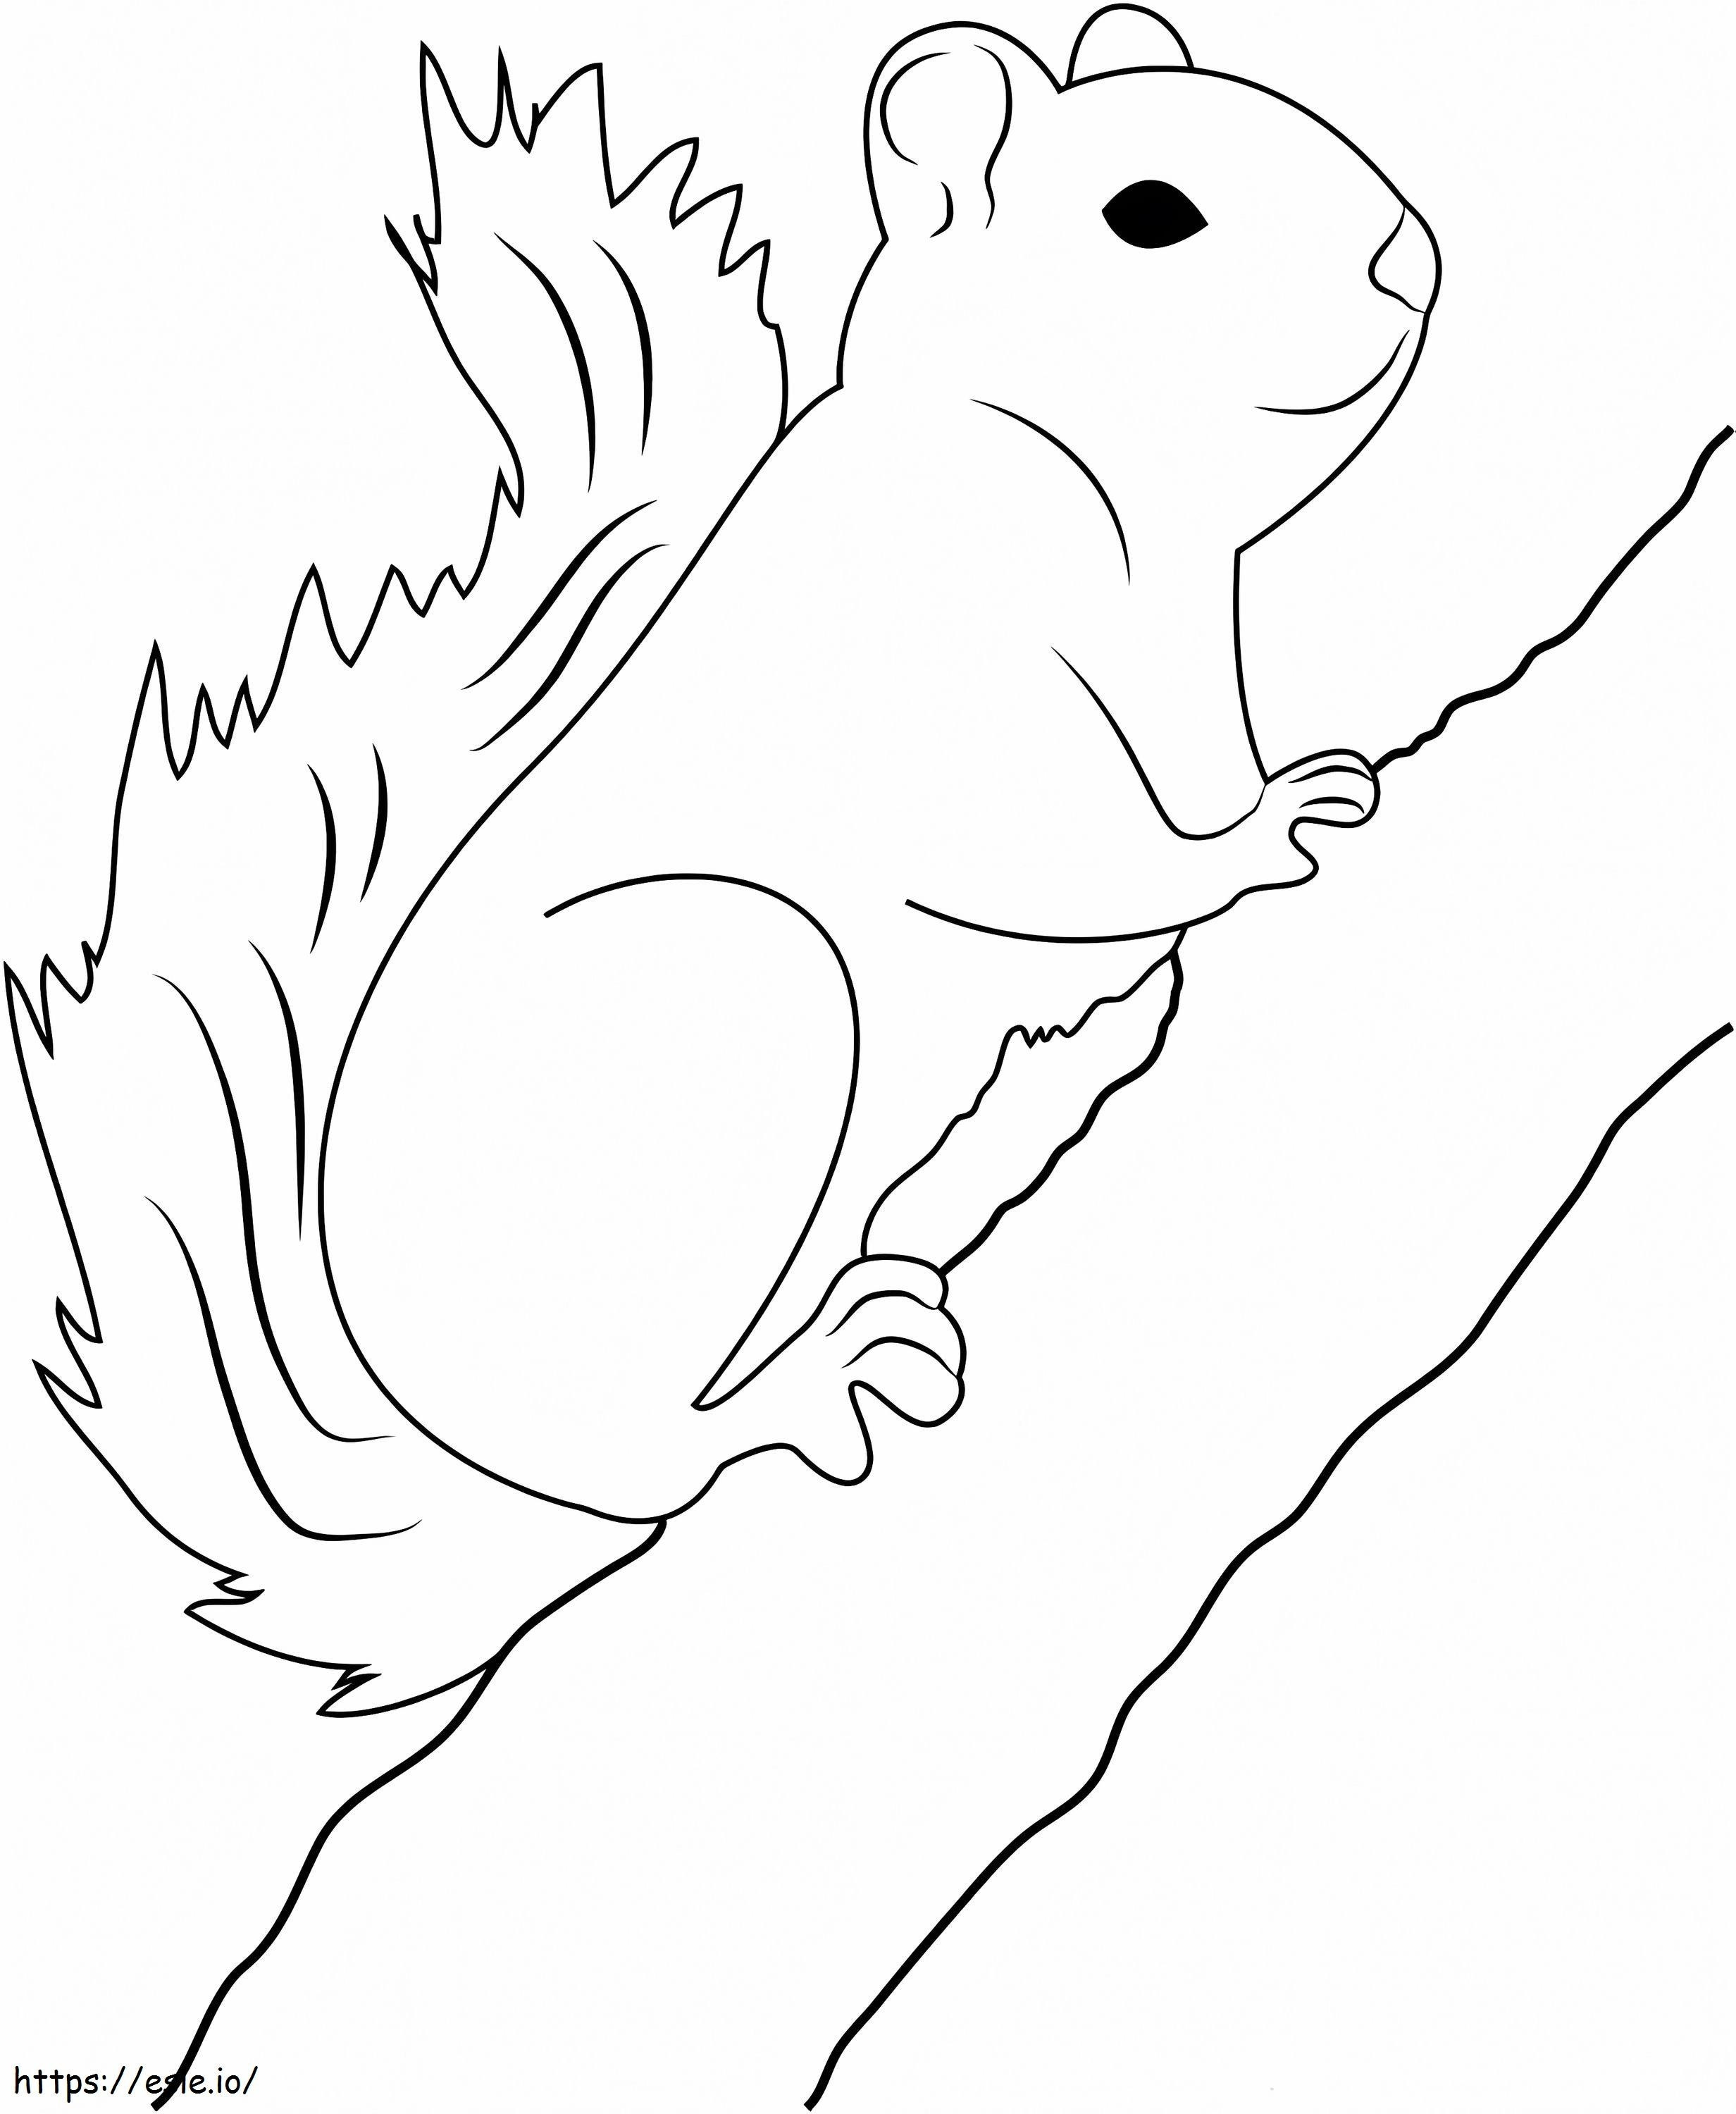 Coloriage Branche d'arbre grimpante d'écureuil à imprimer dessin